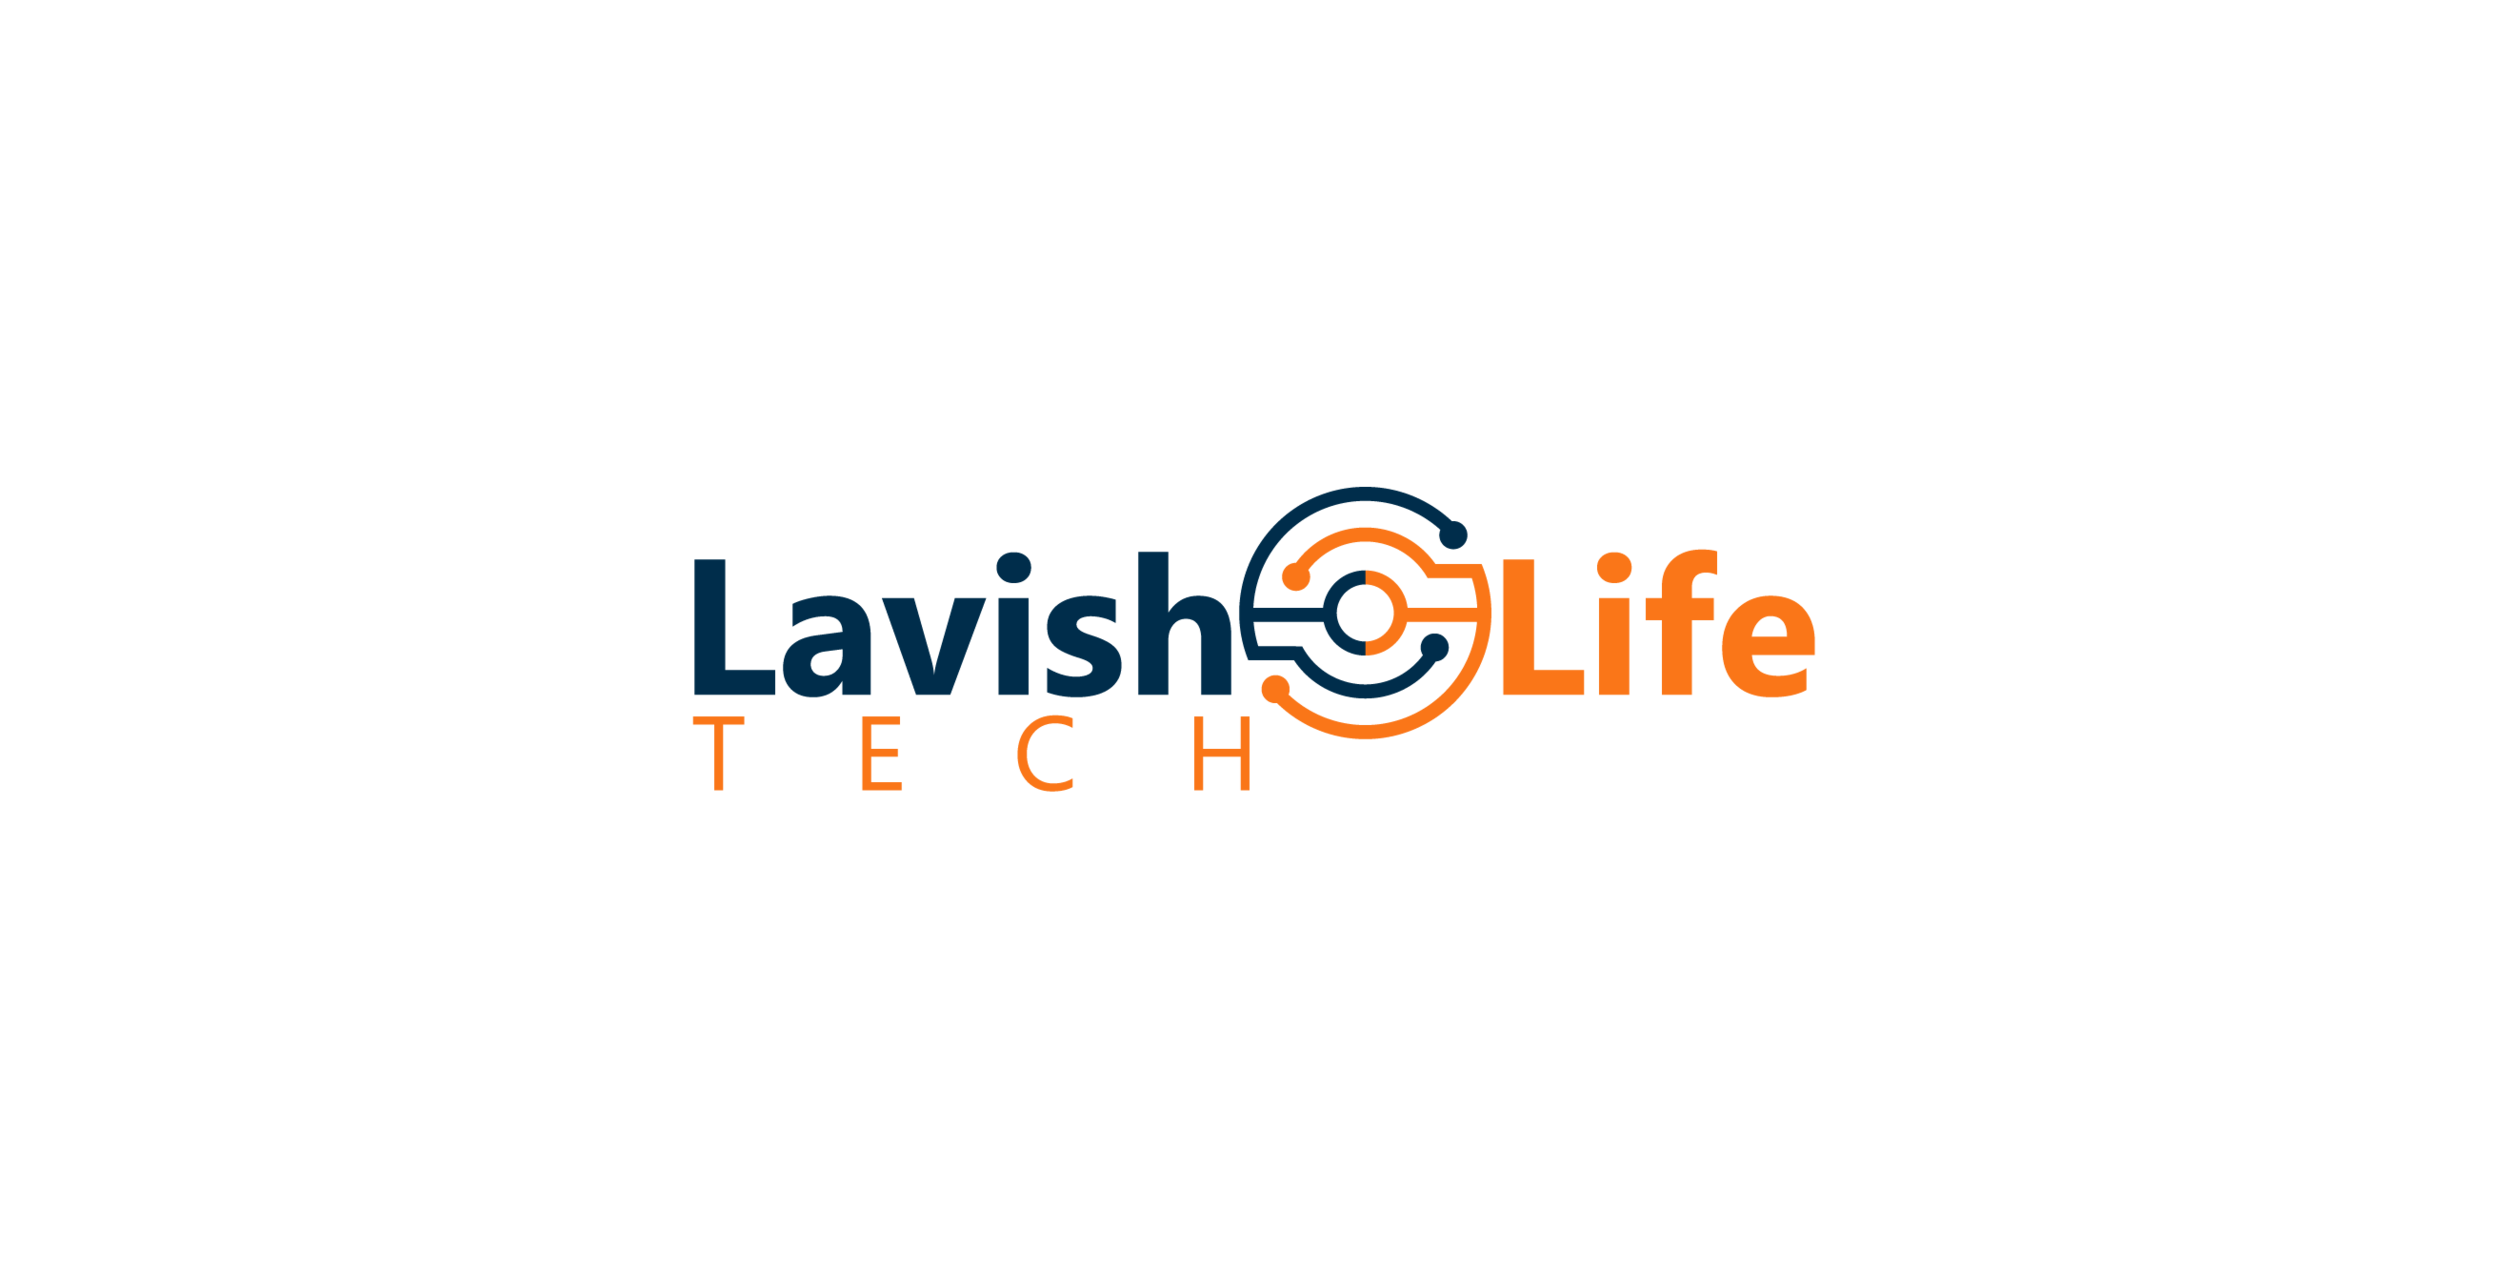 Lavish Life Tech